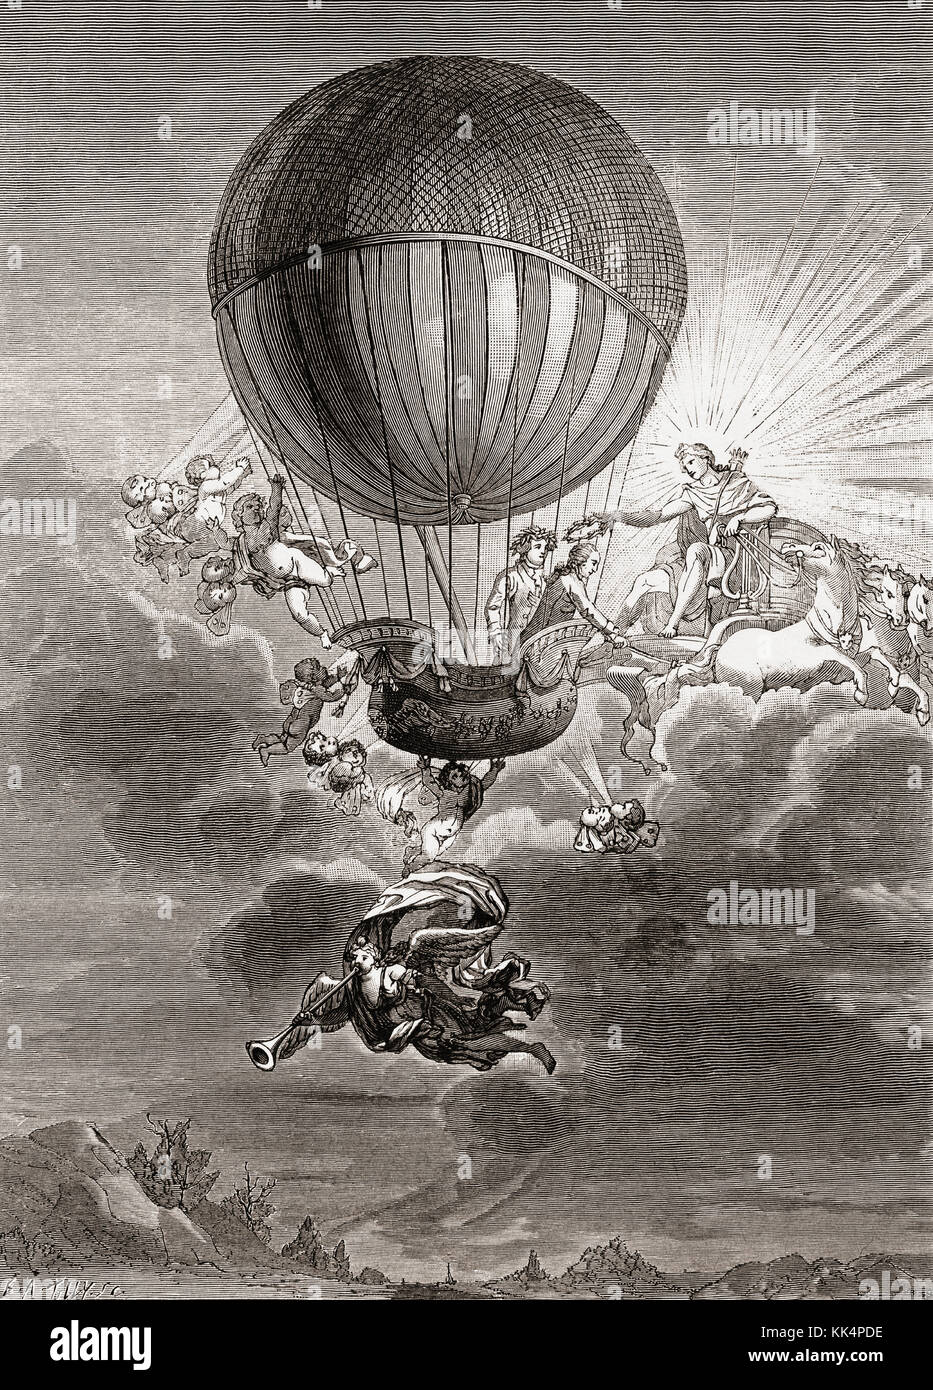 Allegorische Arbeit, die den Ballonfahrer Jacques Alexandre César Charles zeigt, der einen Kranz von Apollo erhält. Jacques Alexandre César Charles, 1746 - 1823. Französischer Ballonfahrer, Erfinder, Wissenschaftler und Mathematiker. Stockfoto